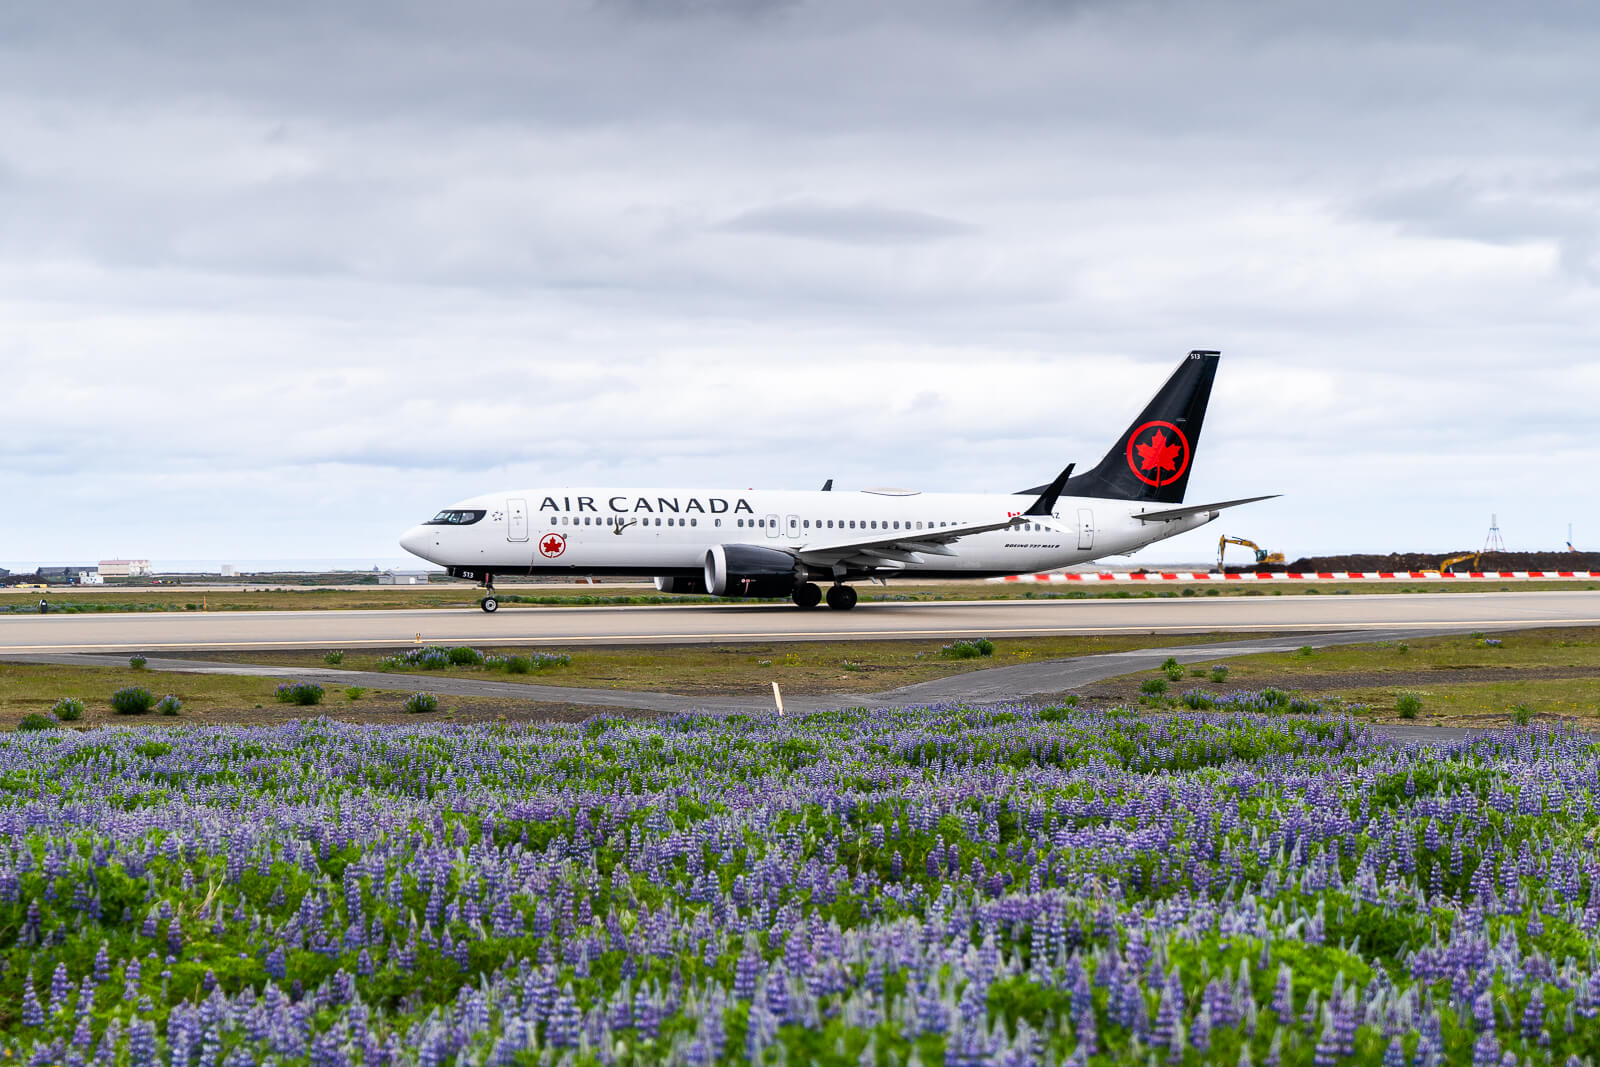 Air Canada returns to Keflavik Airport